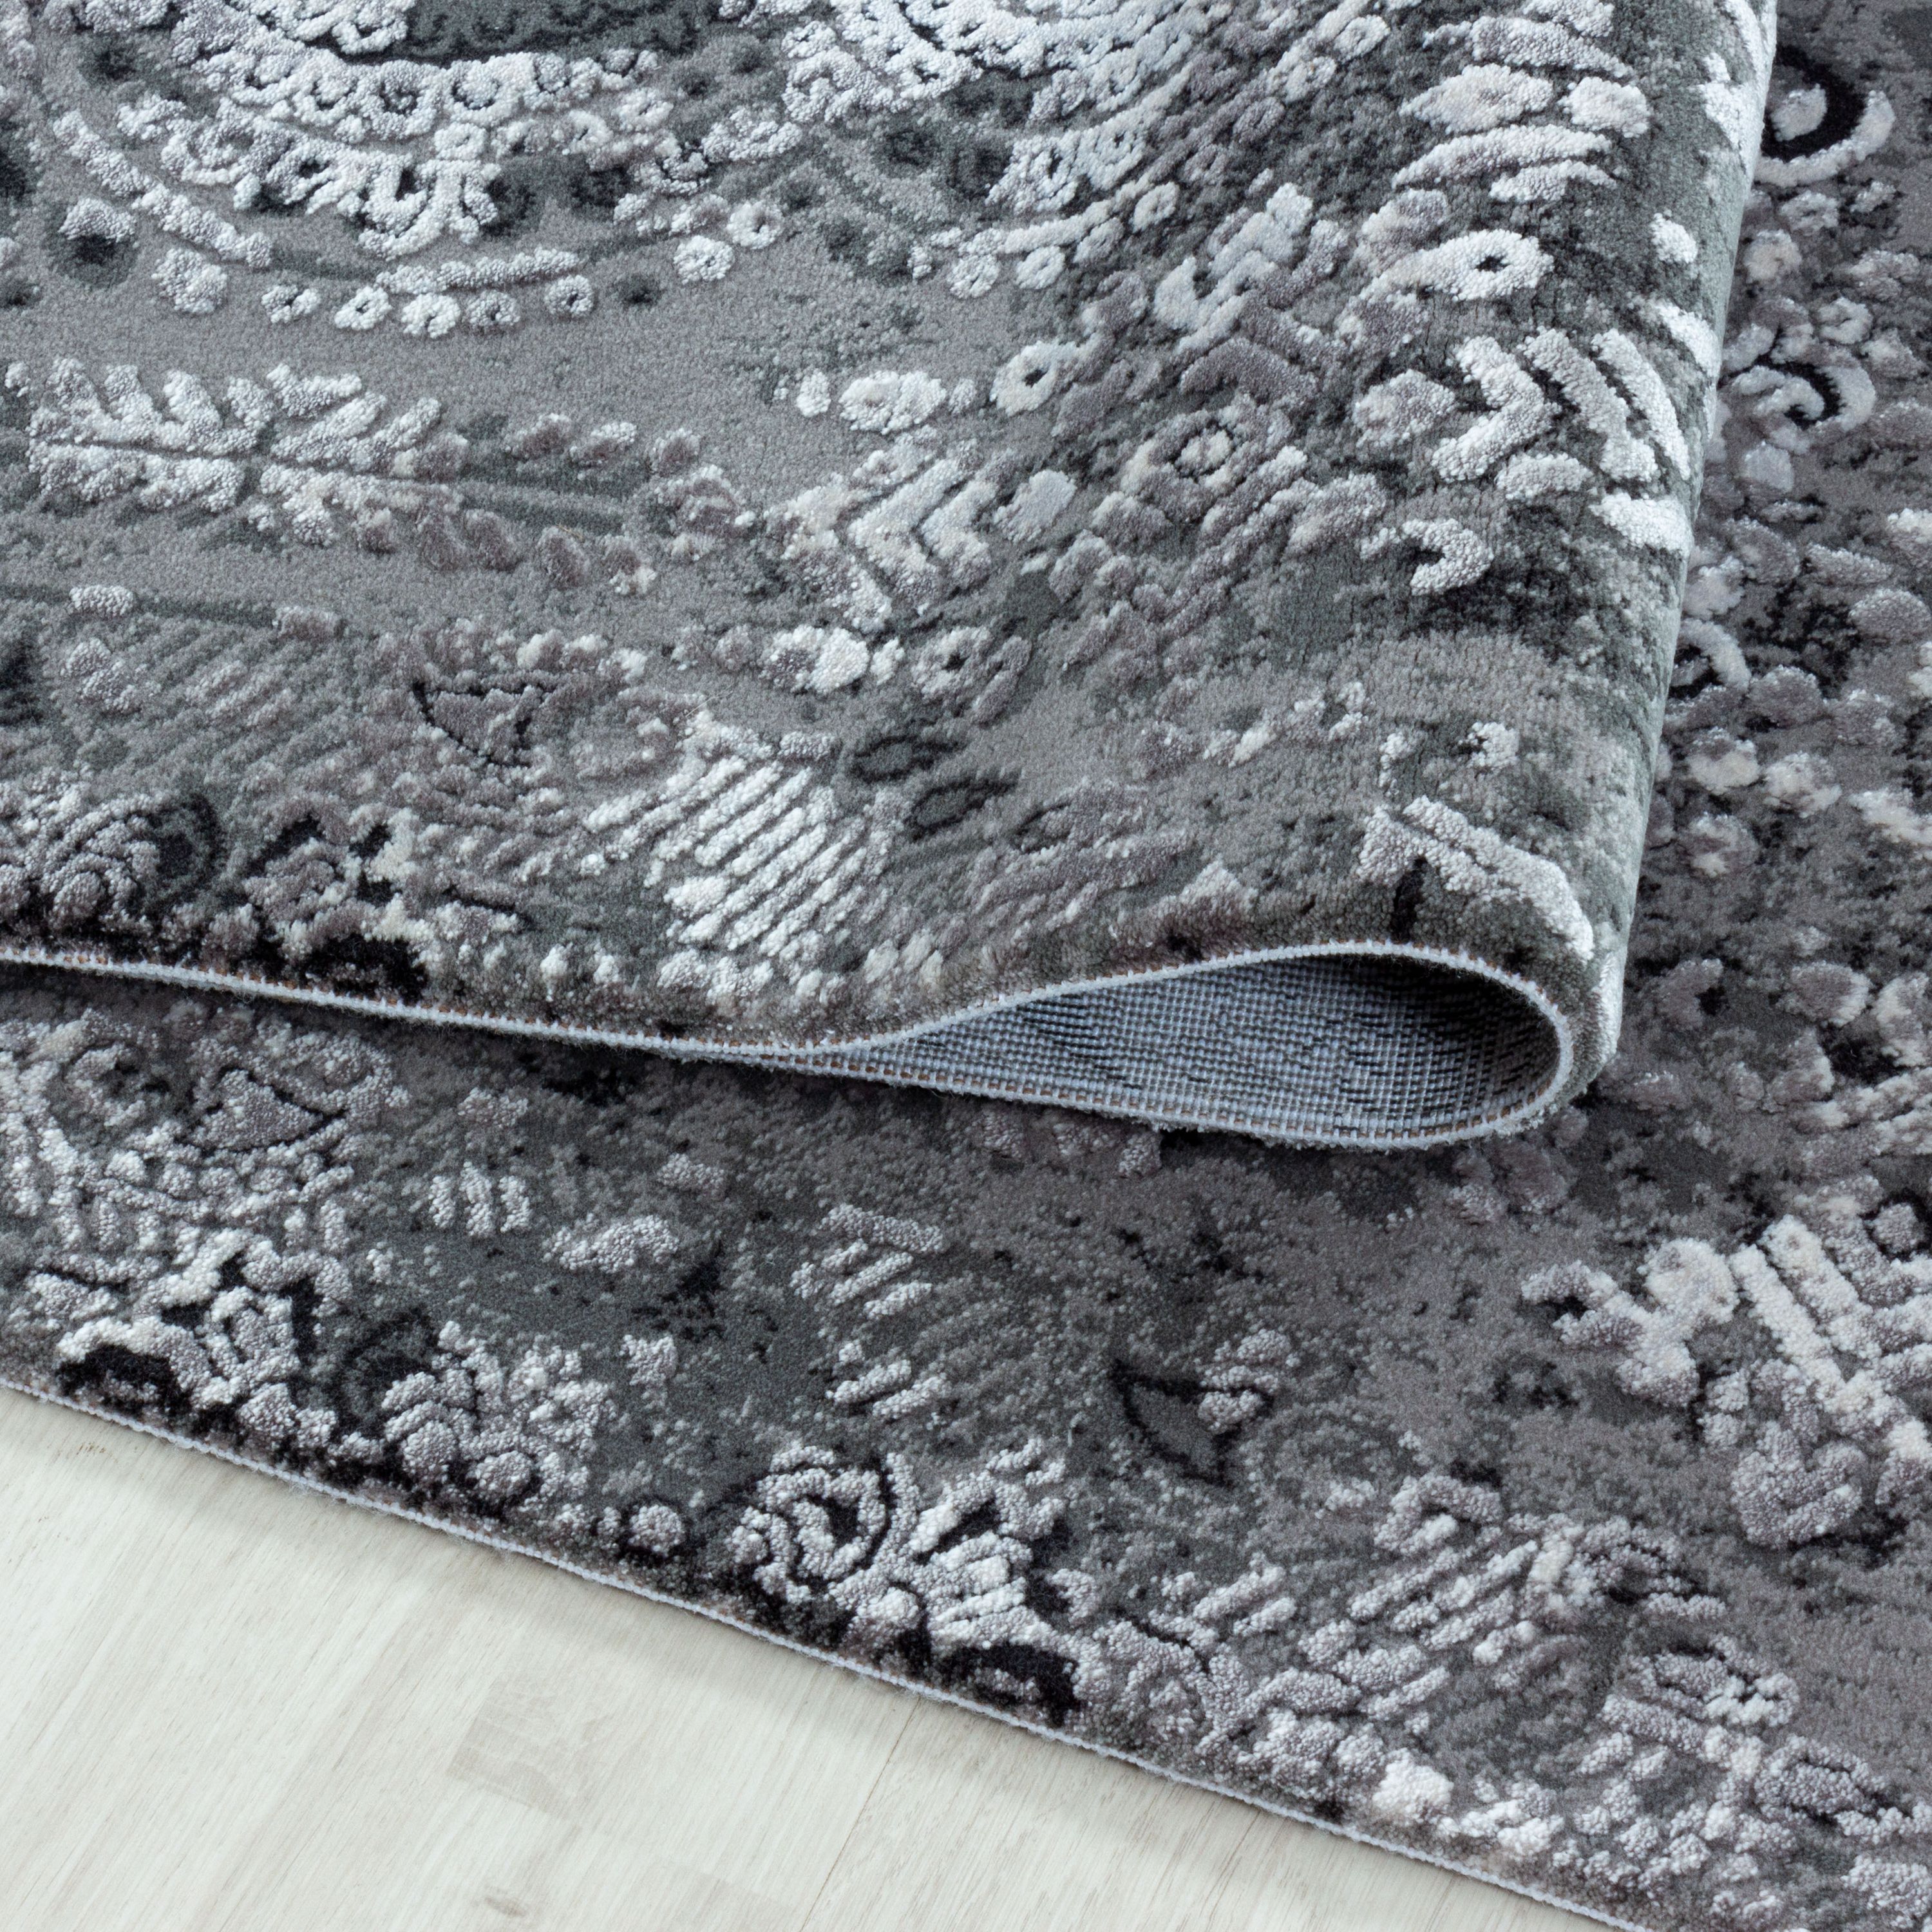 PIERRE CARDIN Design Teppich Baumwollrücken 100% Acryl Orient Muster Silber